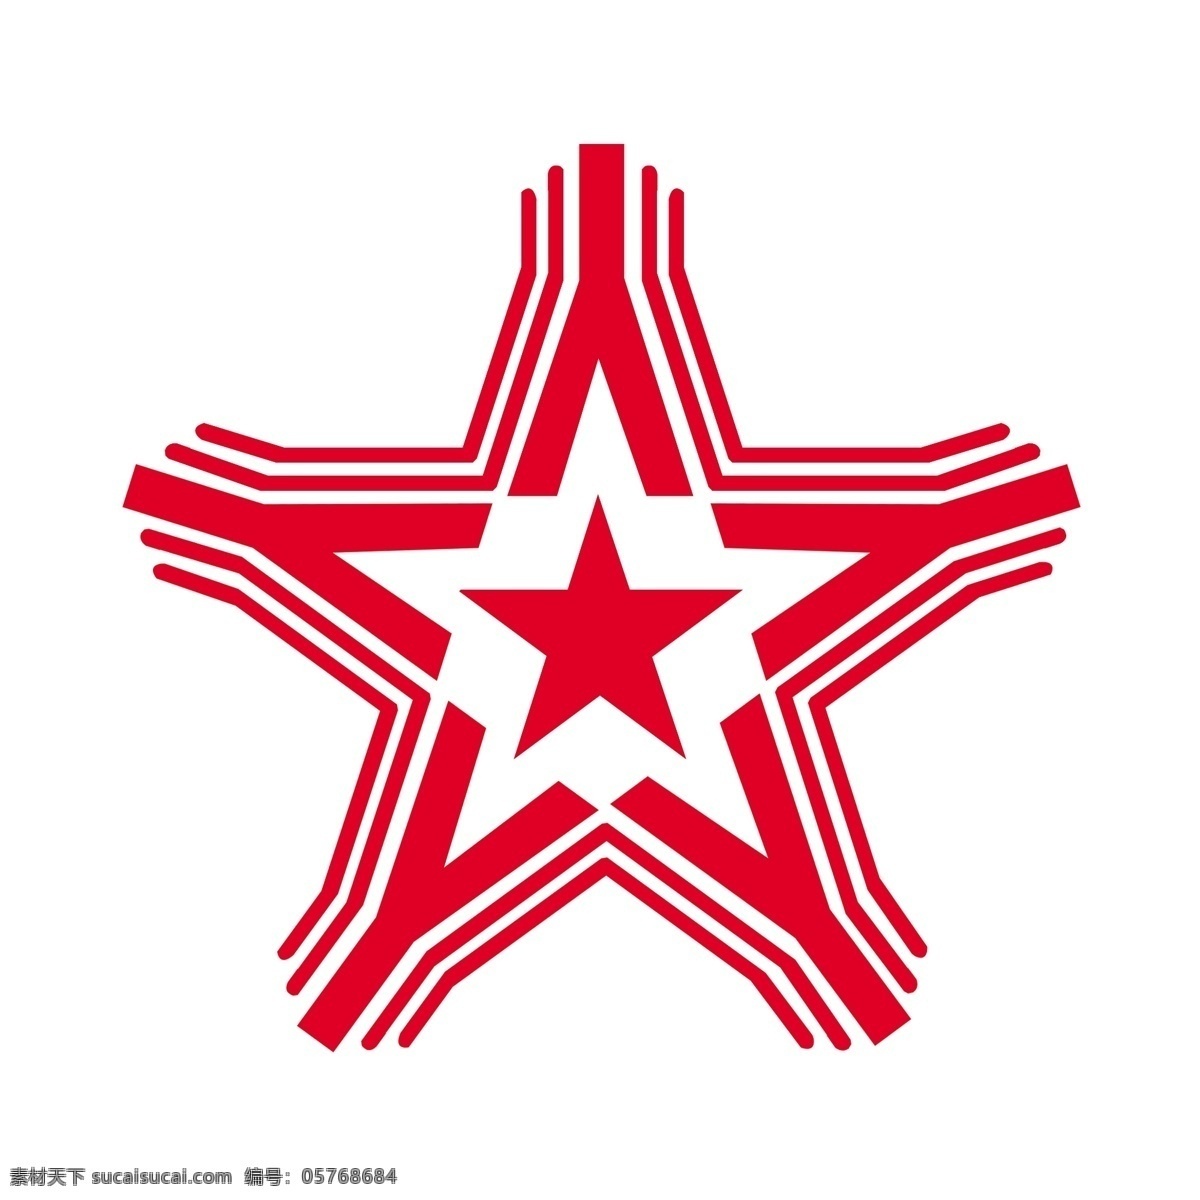 红五星标识 标志 标识 五角星 红五星 标志设计 广告设计模板 源文件